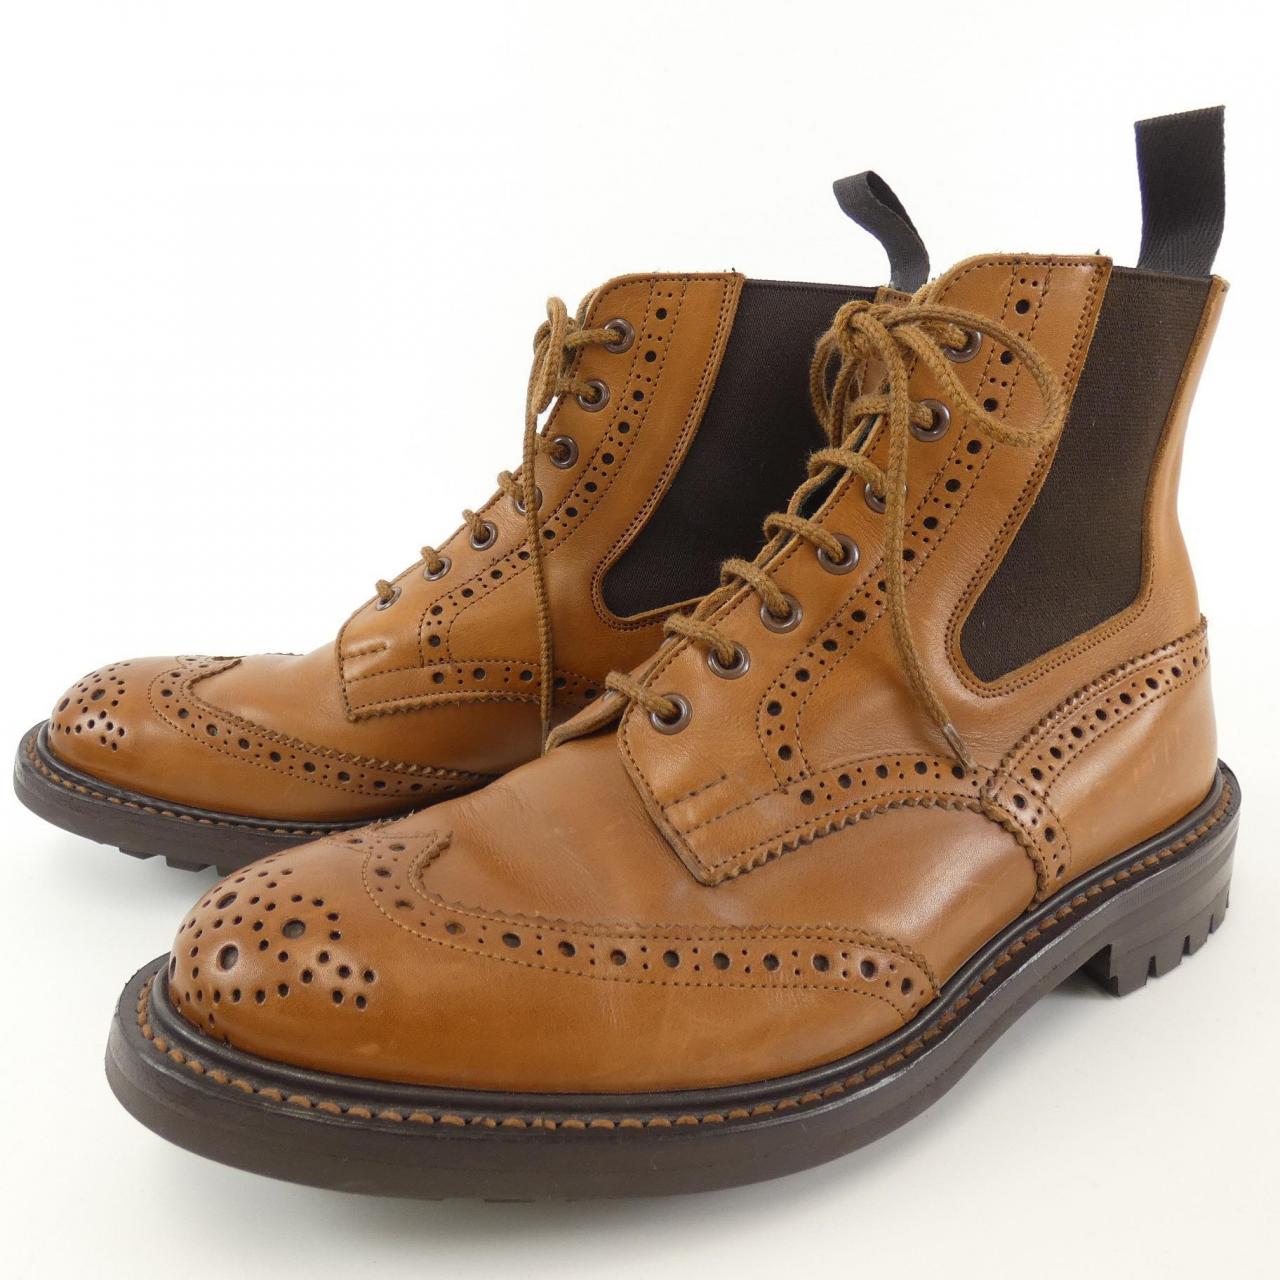 Tricker's Tricker's boots